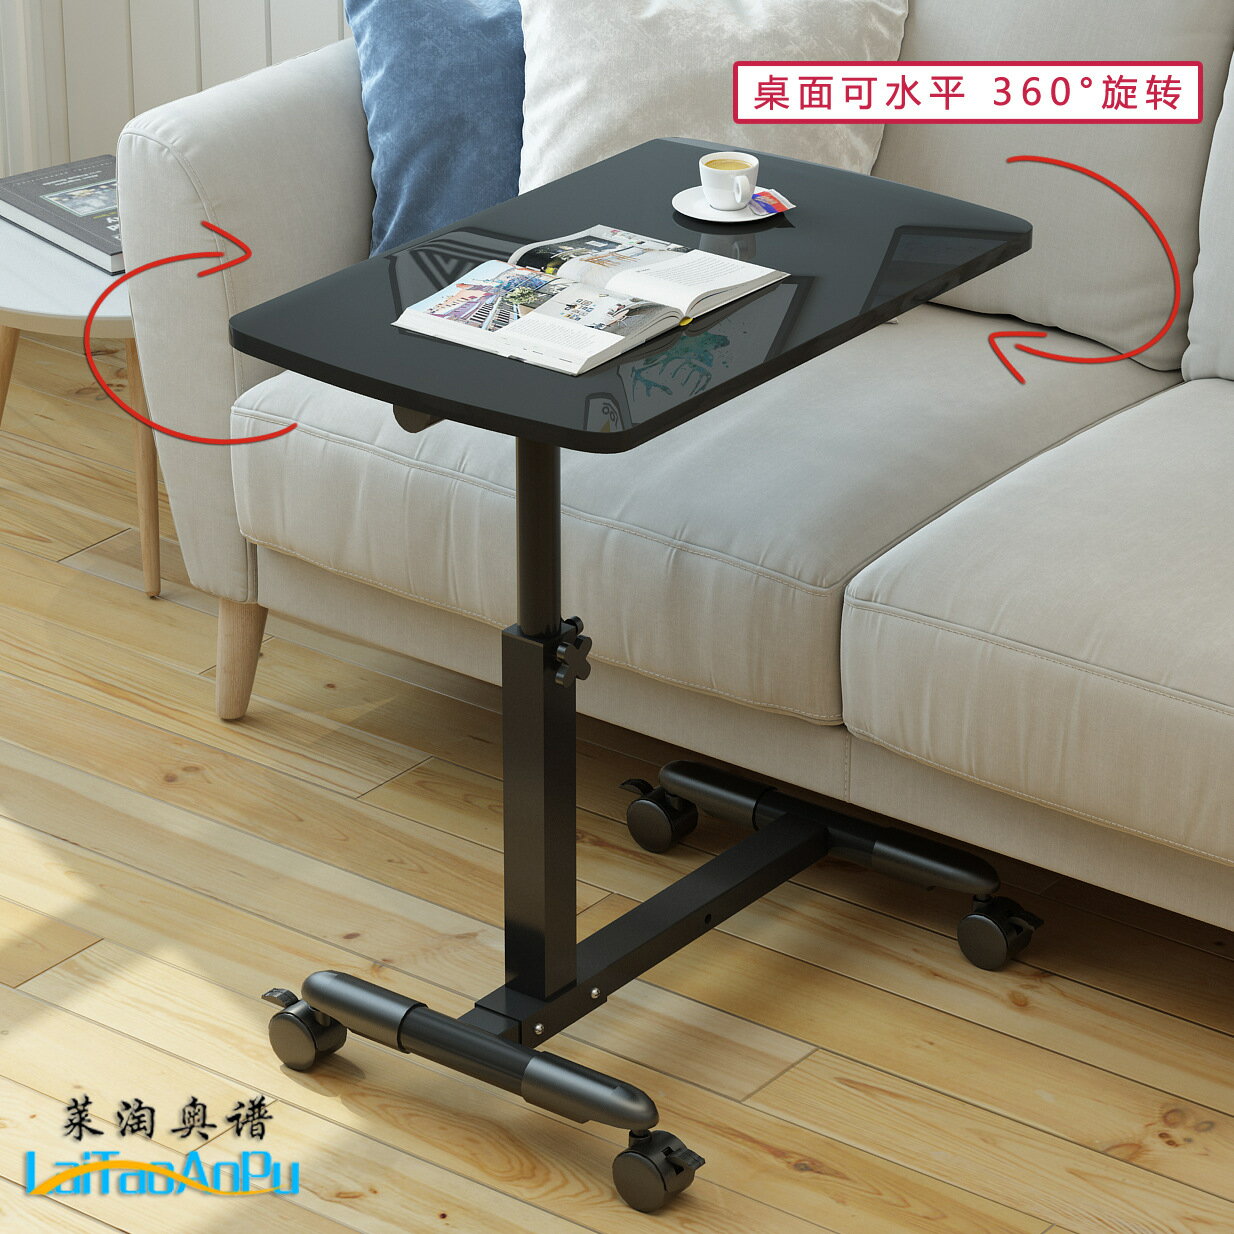 電腦桌懶人桌颱式家用床上書桌簡約小桌子簡易折疊桌可移動床邊桌